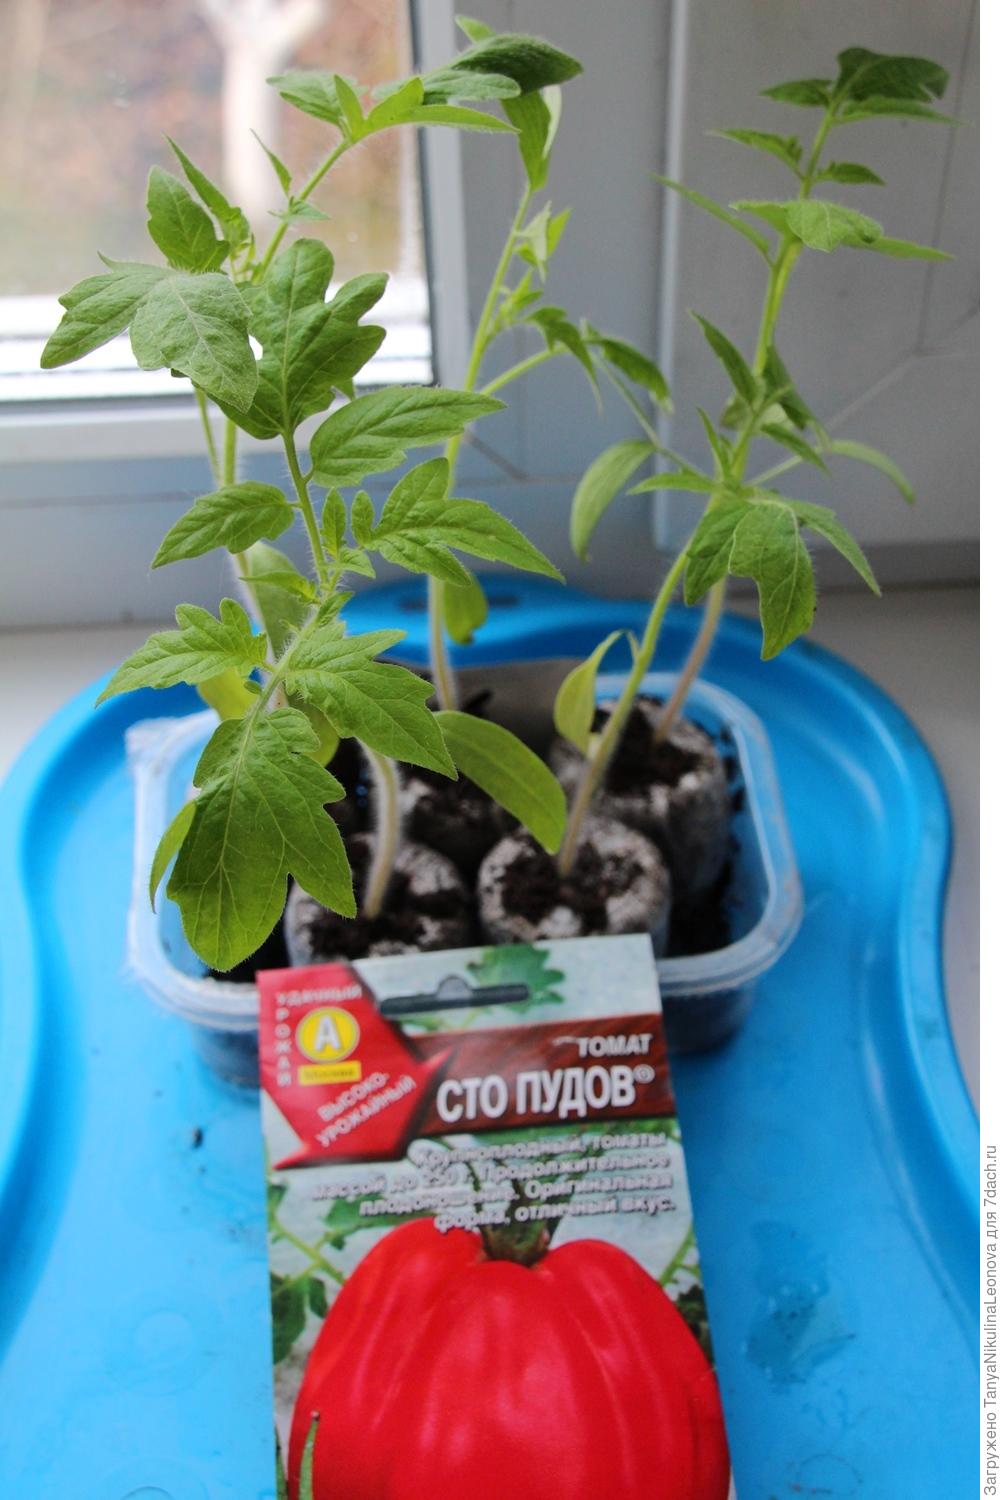 Посев томатов на рассаду СТО пудов